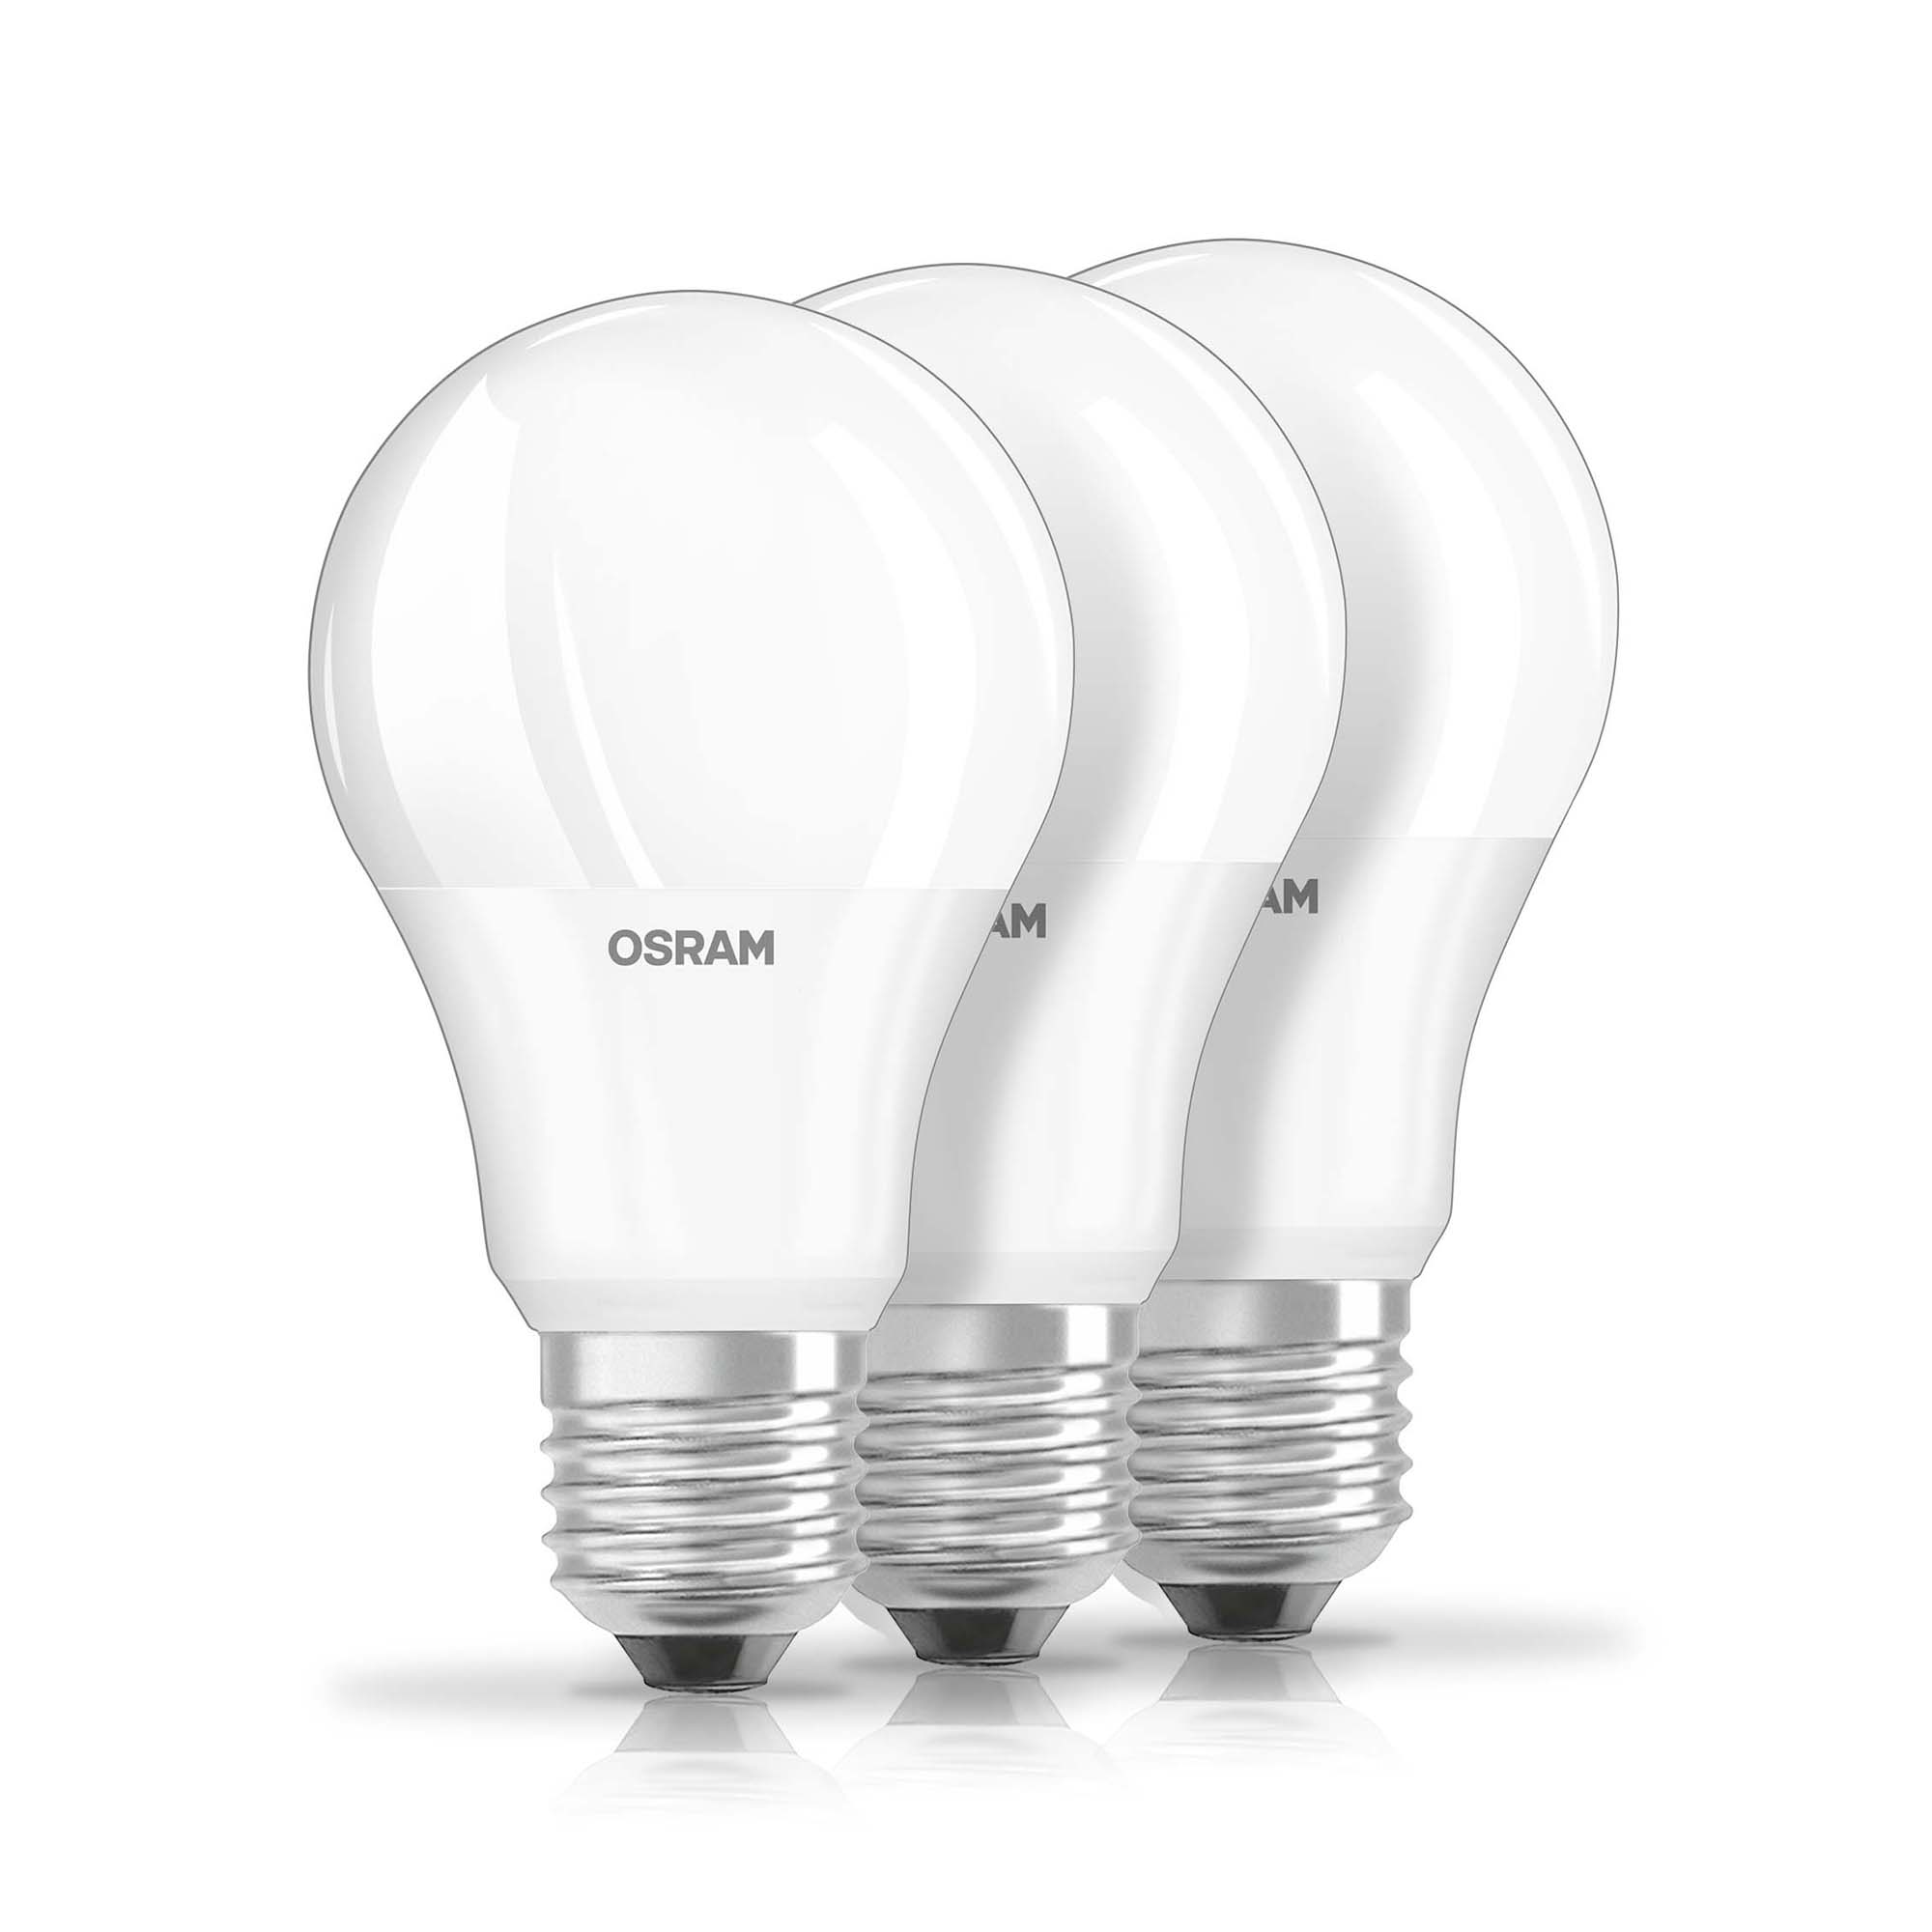 LED Bulb Osram LED BASE CLA60 9W 827 FR E27 3er-Pack 2700K 806lm